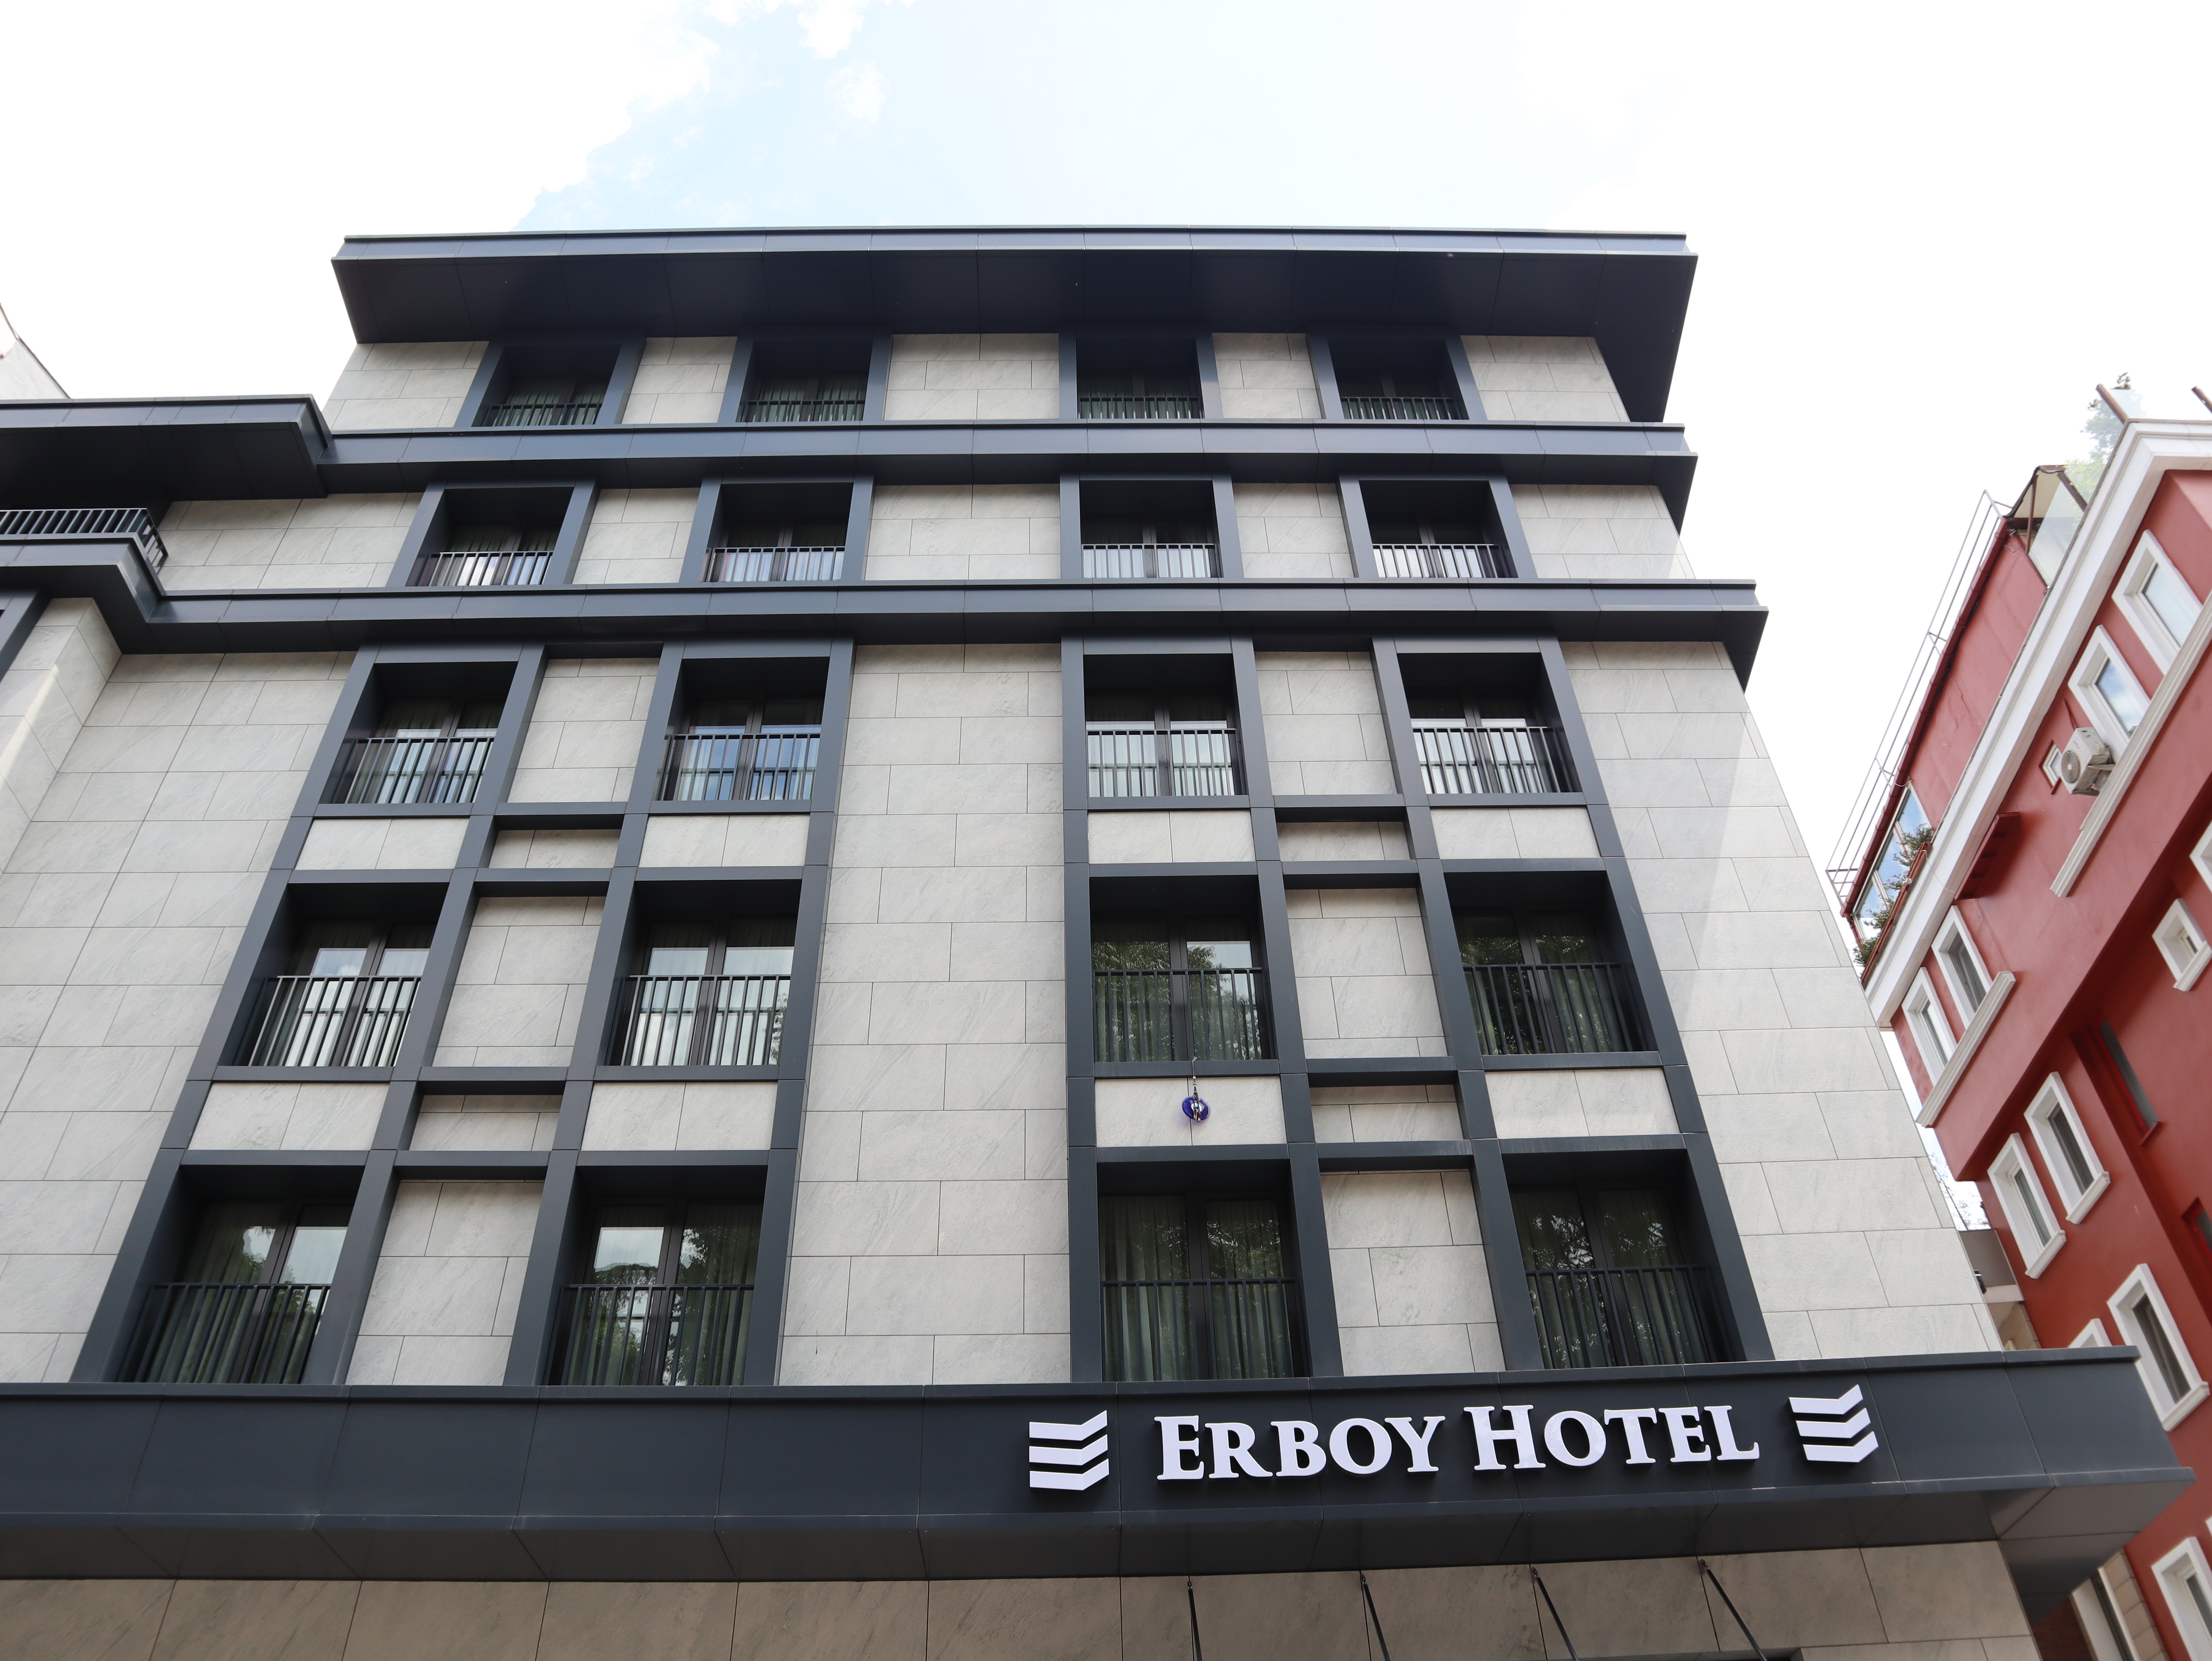 Erboy Hotel